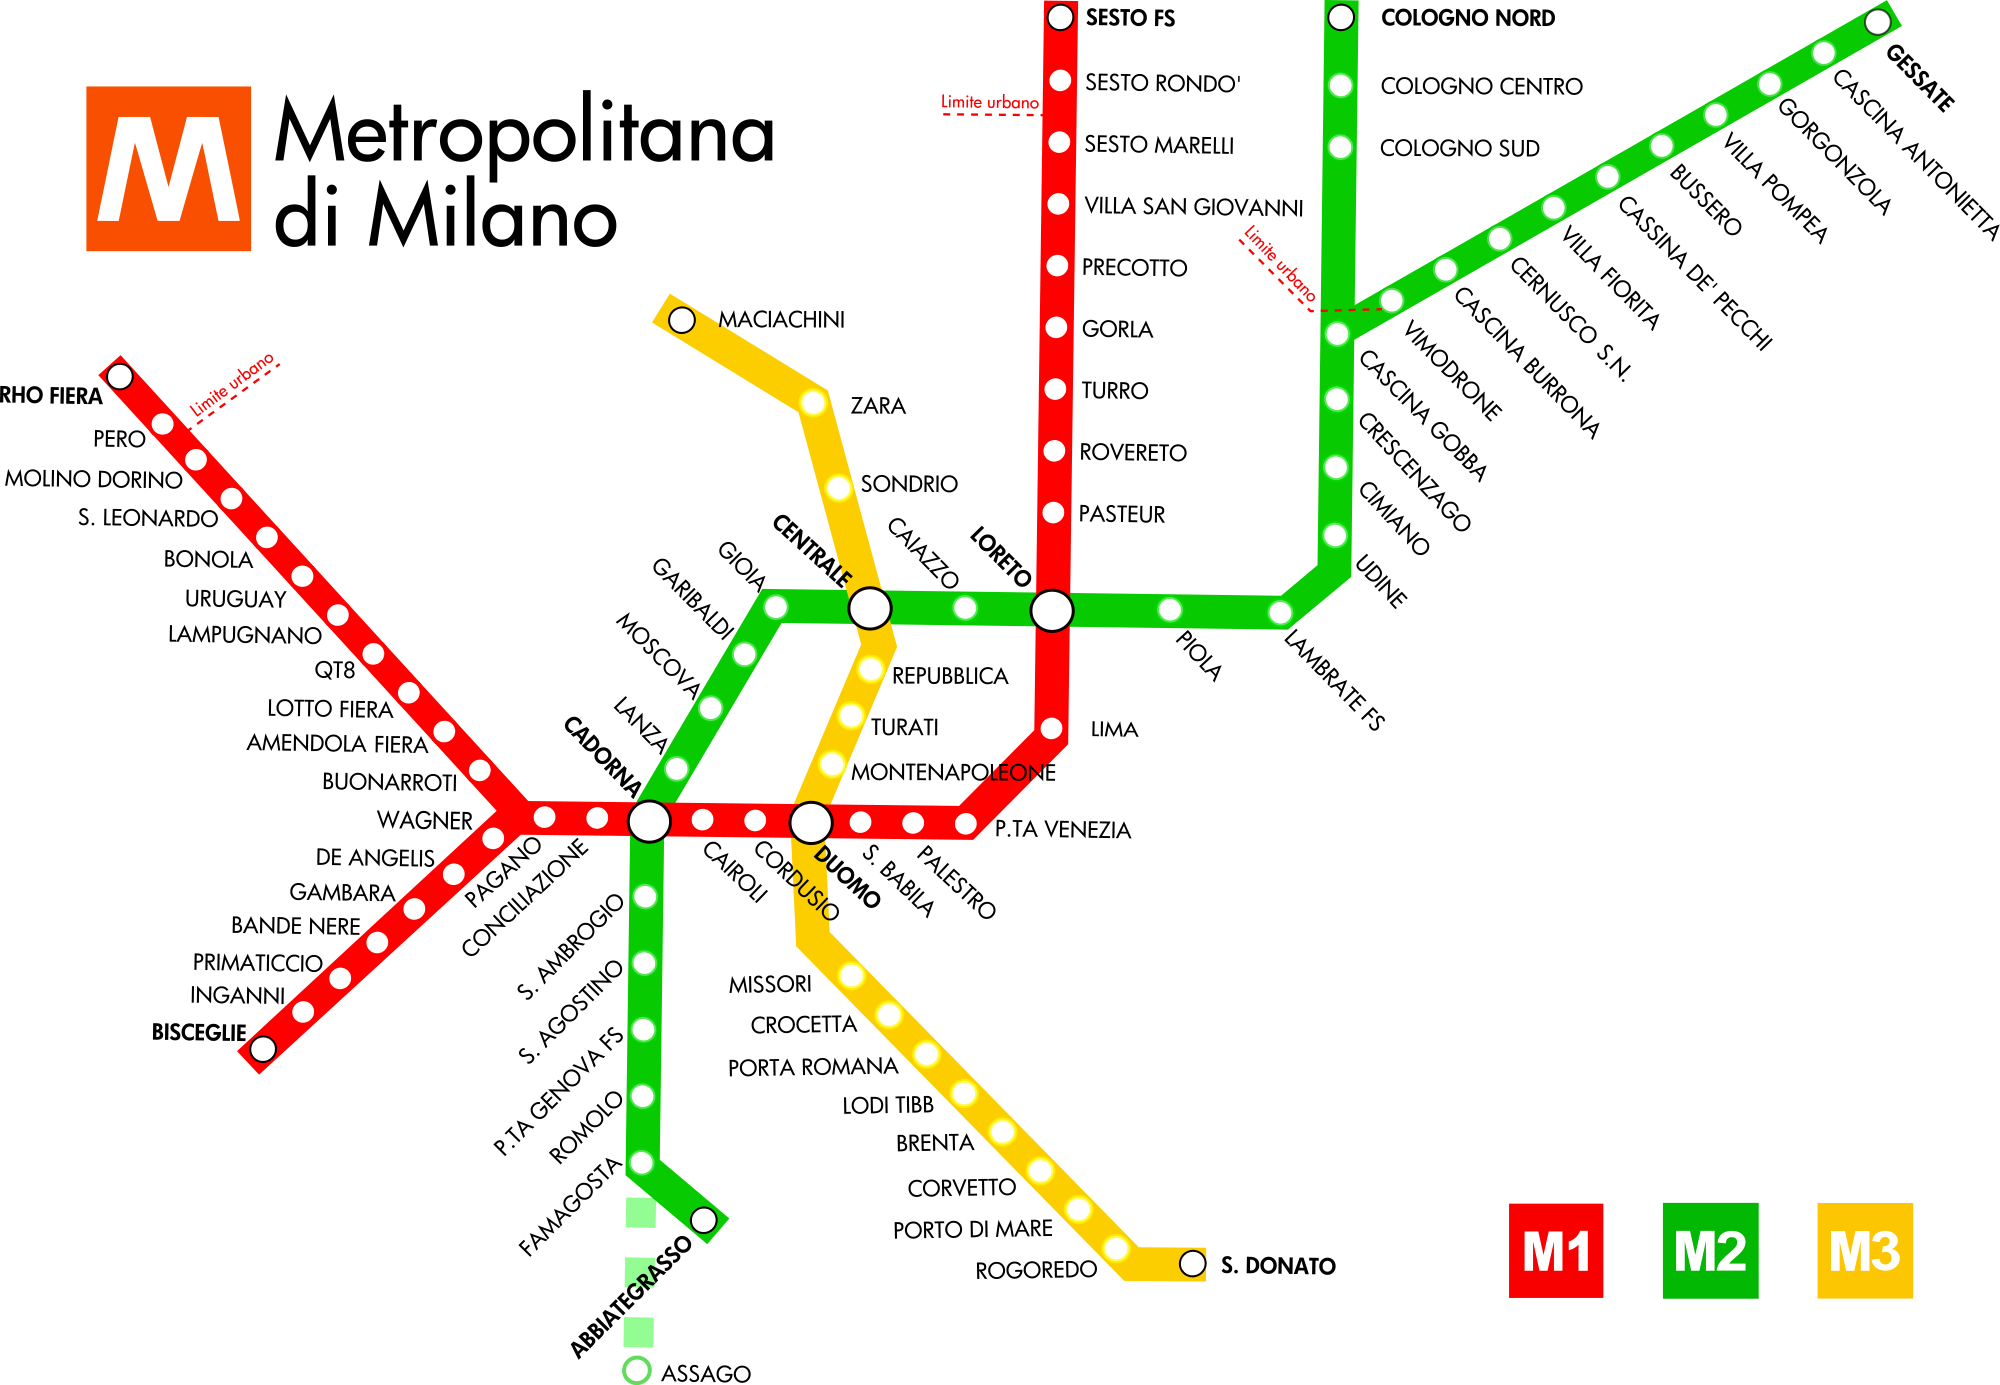 Milan Metro Map Italy